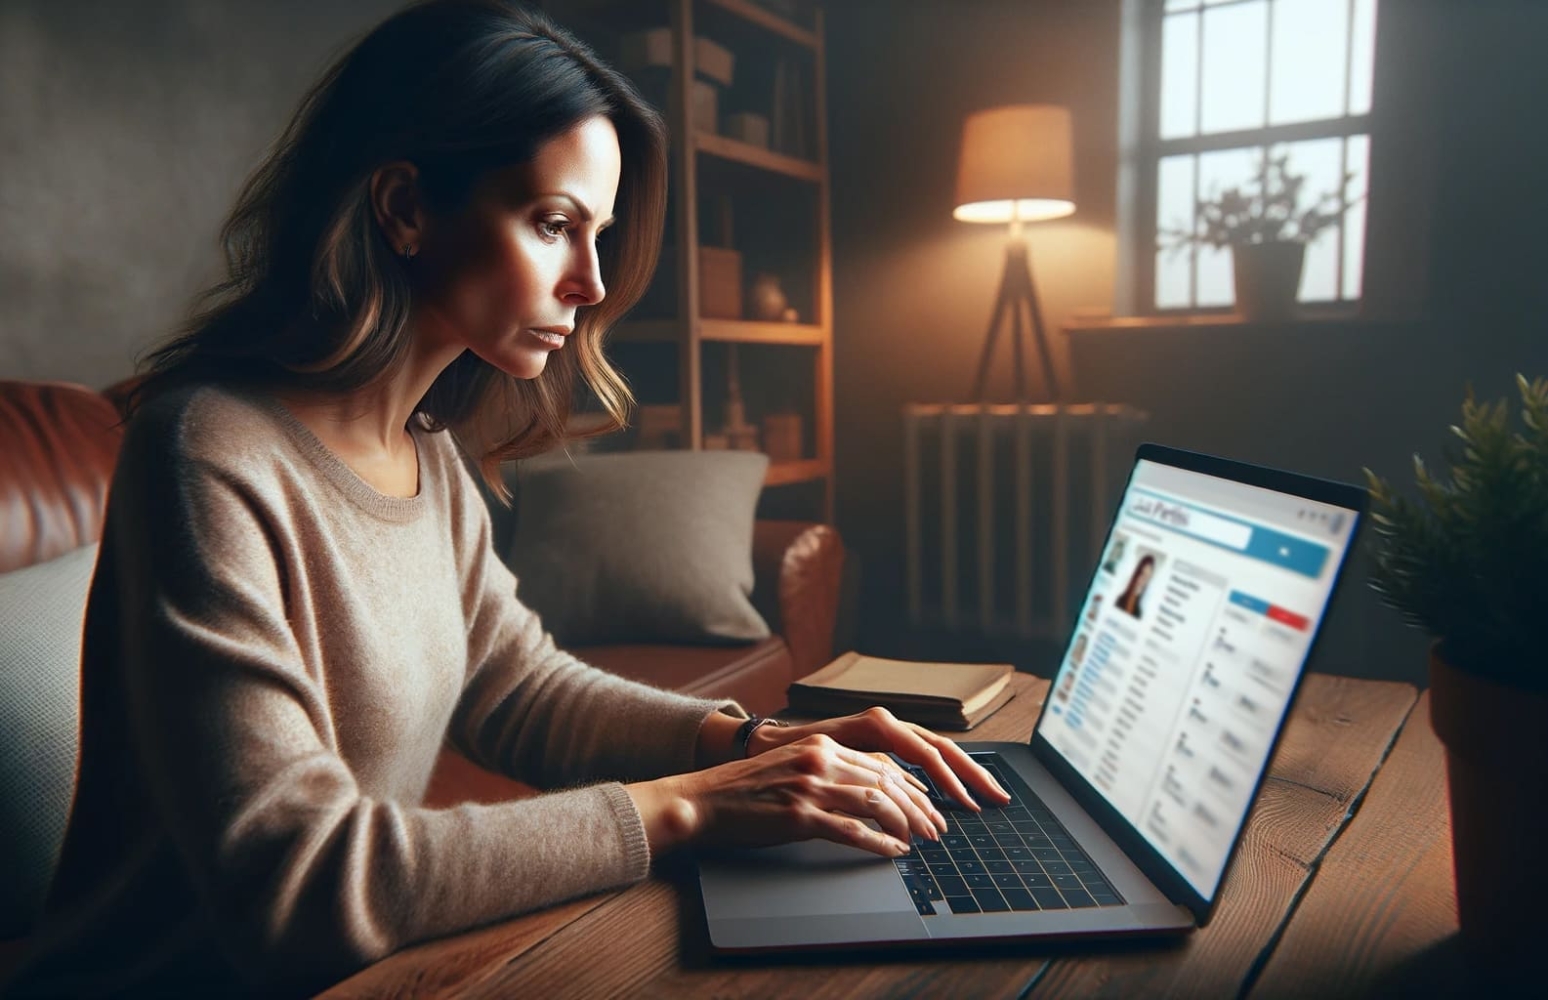 Uma mulher sentada em sua mesa em um ambiente doméstico, concentrada em perfis de usuários em seu laptop, olhando para a tela onde um aplicativo móvel de busca de pessoas está aberto